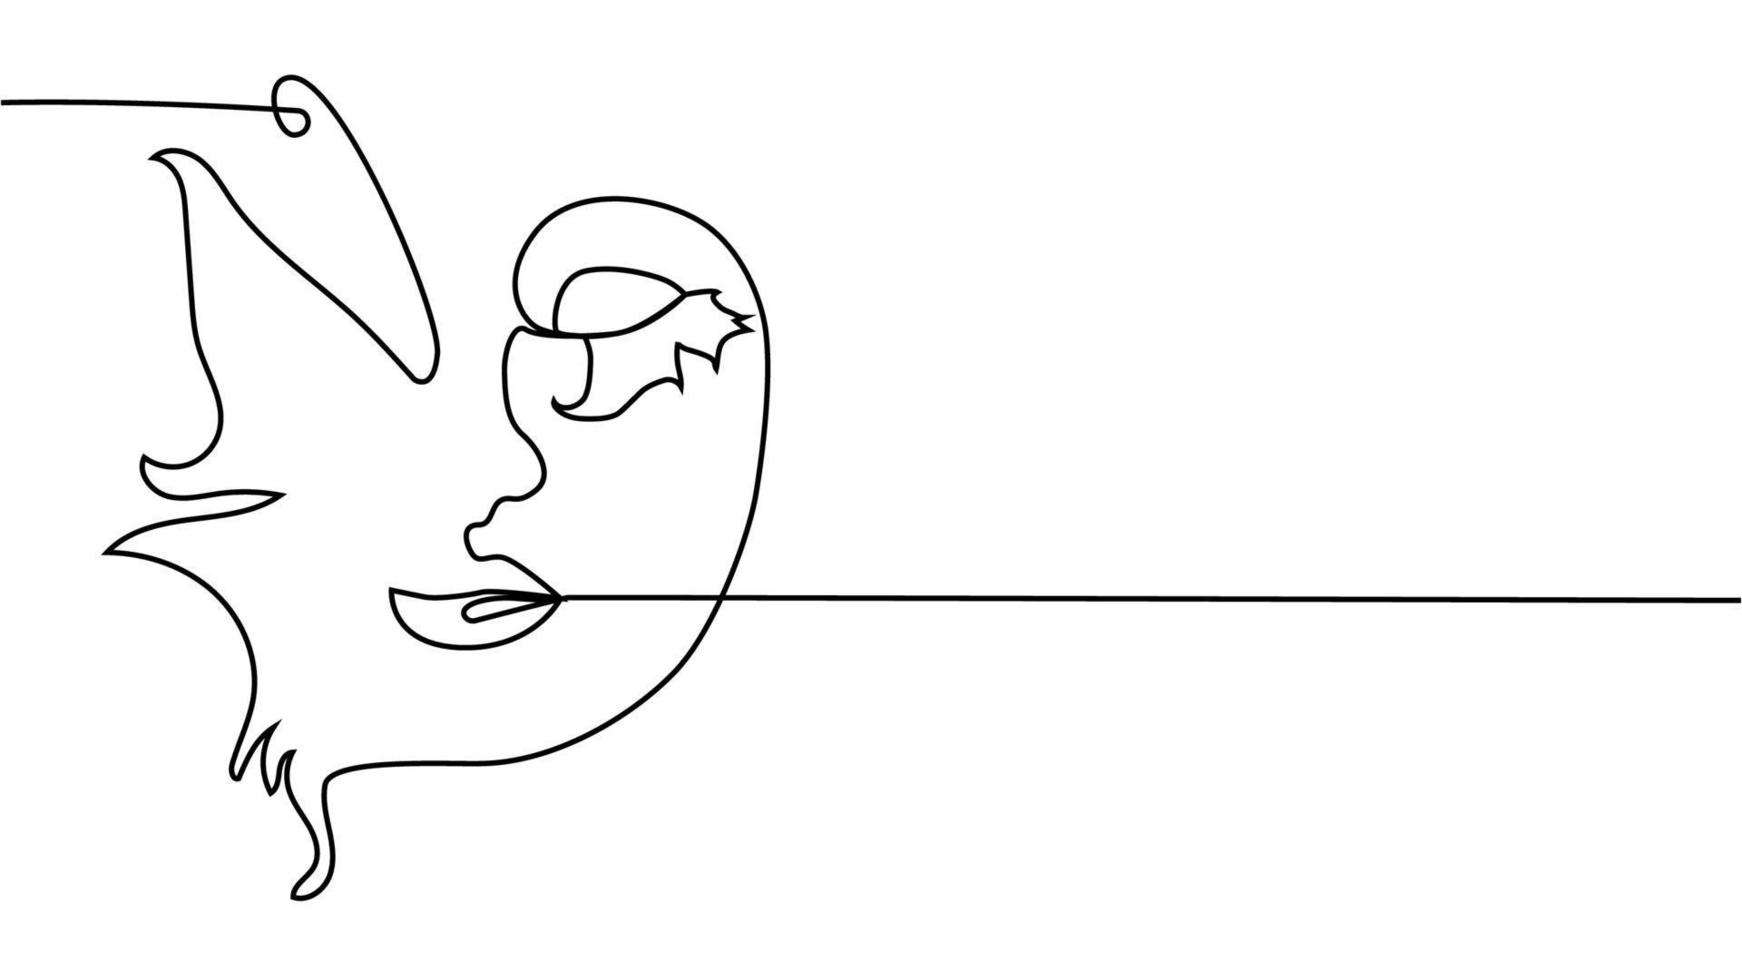 abstrakt ansikte med fjäril ett linje teckning. portret minimalistisk stil vektor